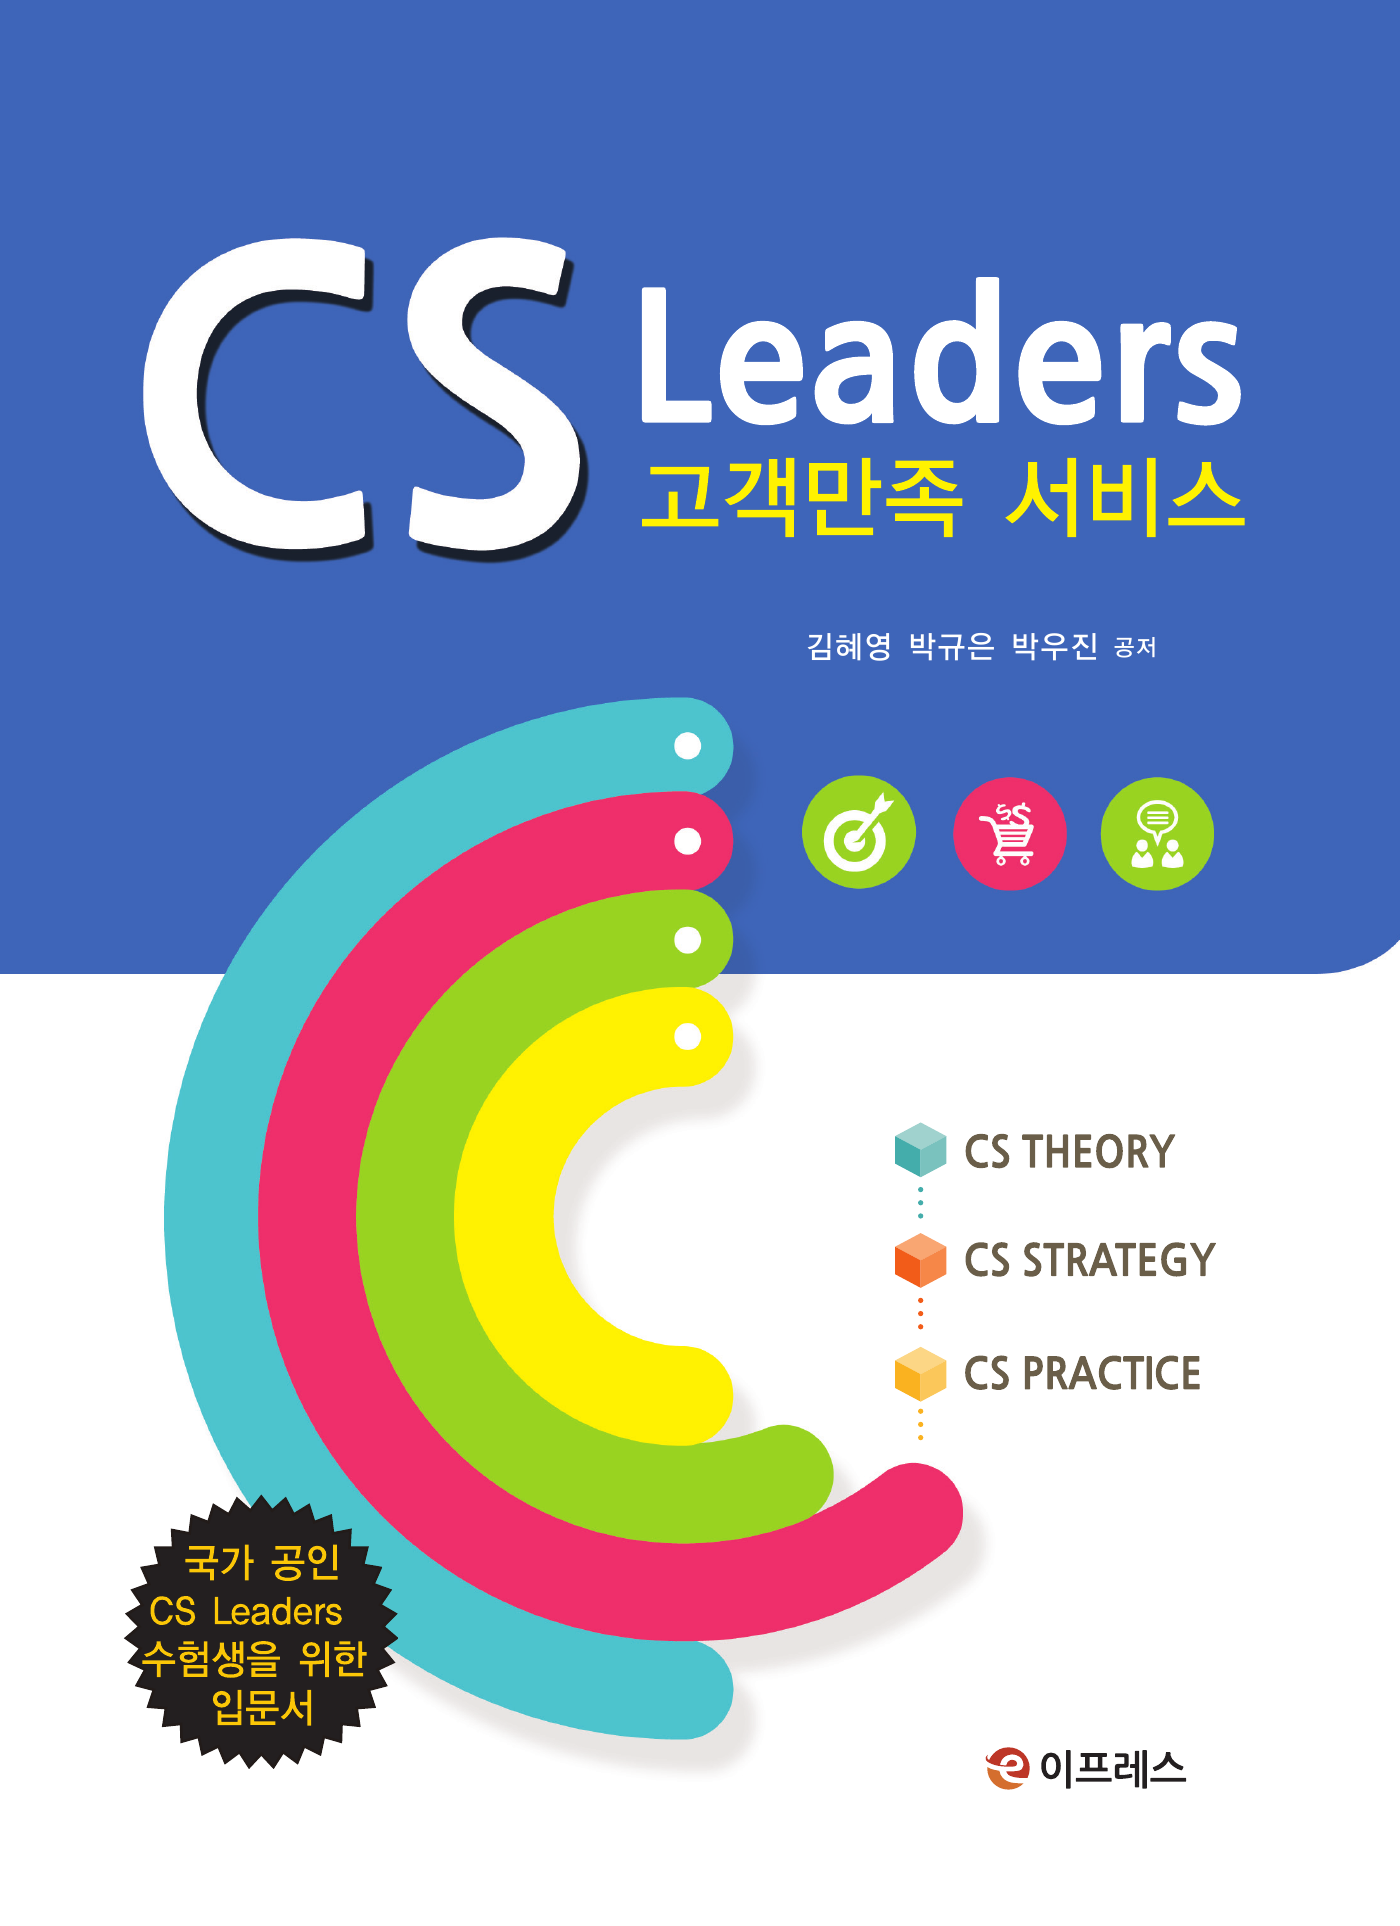 CS Leaders 고객만족 서비스